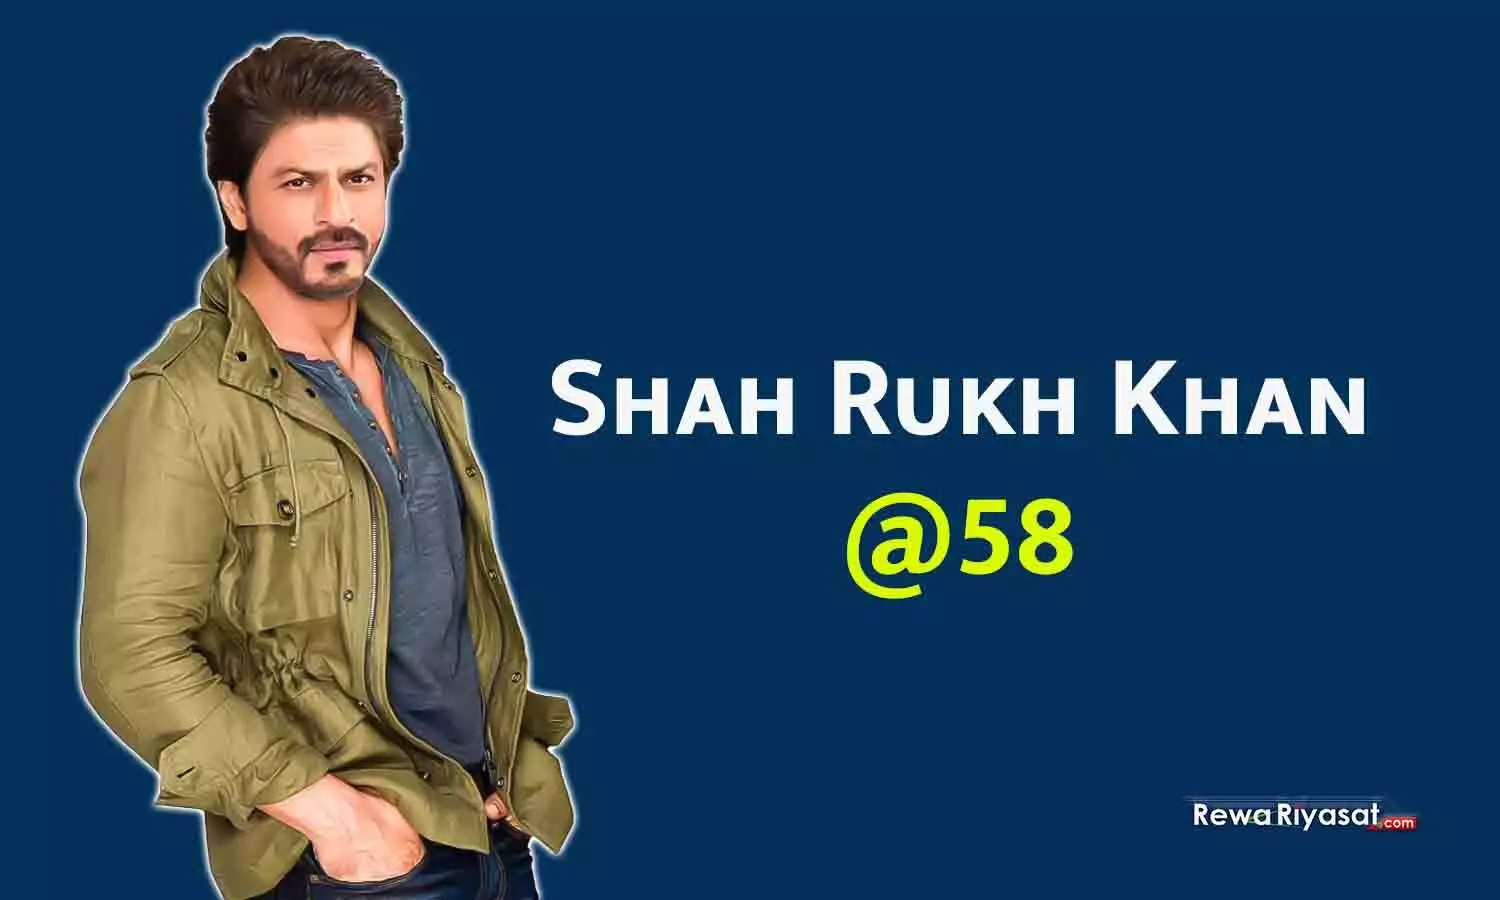 SRK@58: फिल्मी इतिहास का सबसे बड़ा कमबैक, जवान-पठान से कमाए 2200 करोड़; 6400 करोड़ के मालिक हैं दुनिया के चौथे सबसे अमीर एक्टर शाहरुख खान